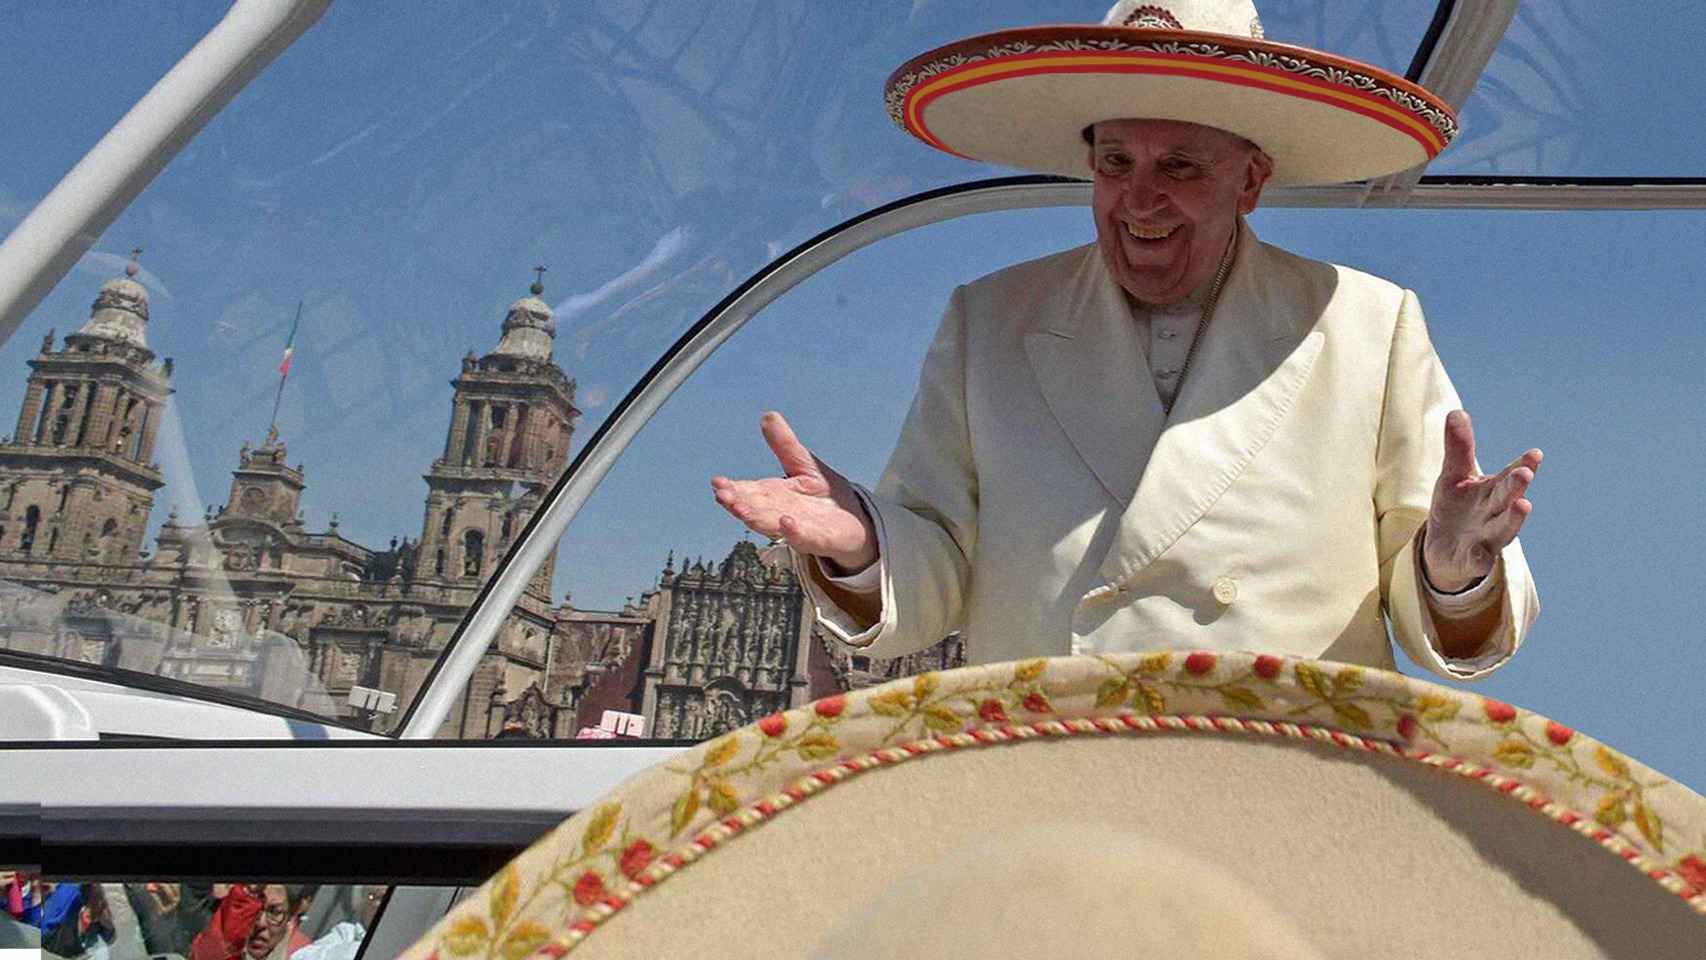 Fotomontaje con la bandera española en una imagen de la visita del papa Francisco a México en febrero de 2016. Ed. Gráfica: Lina Smith